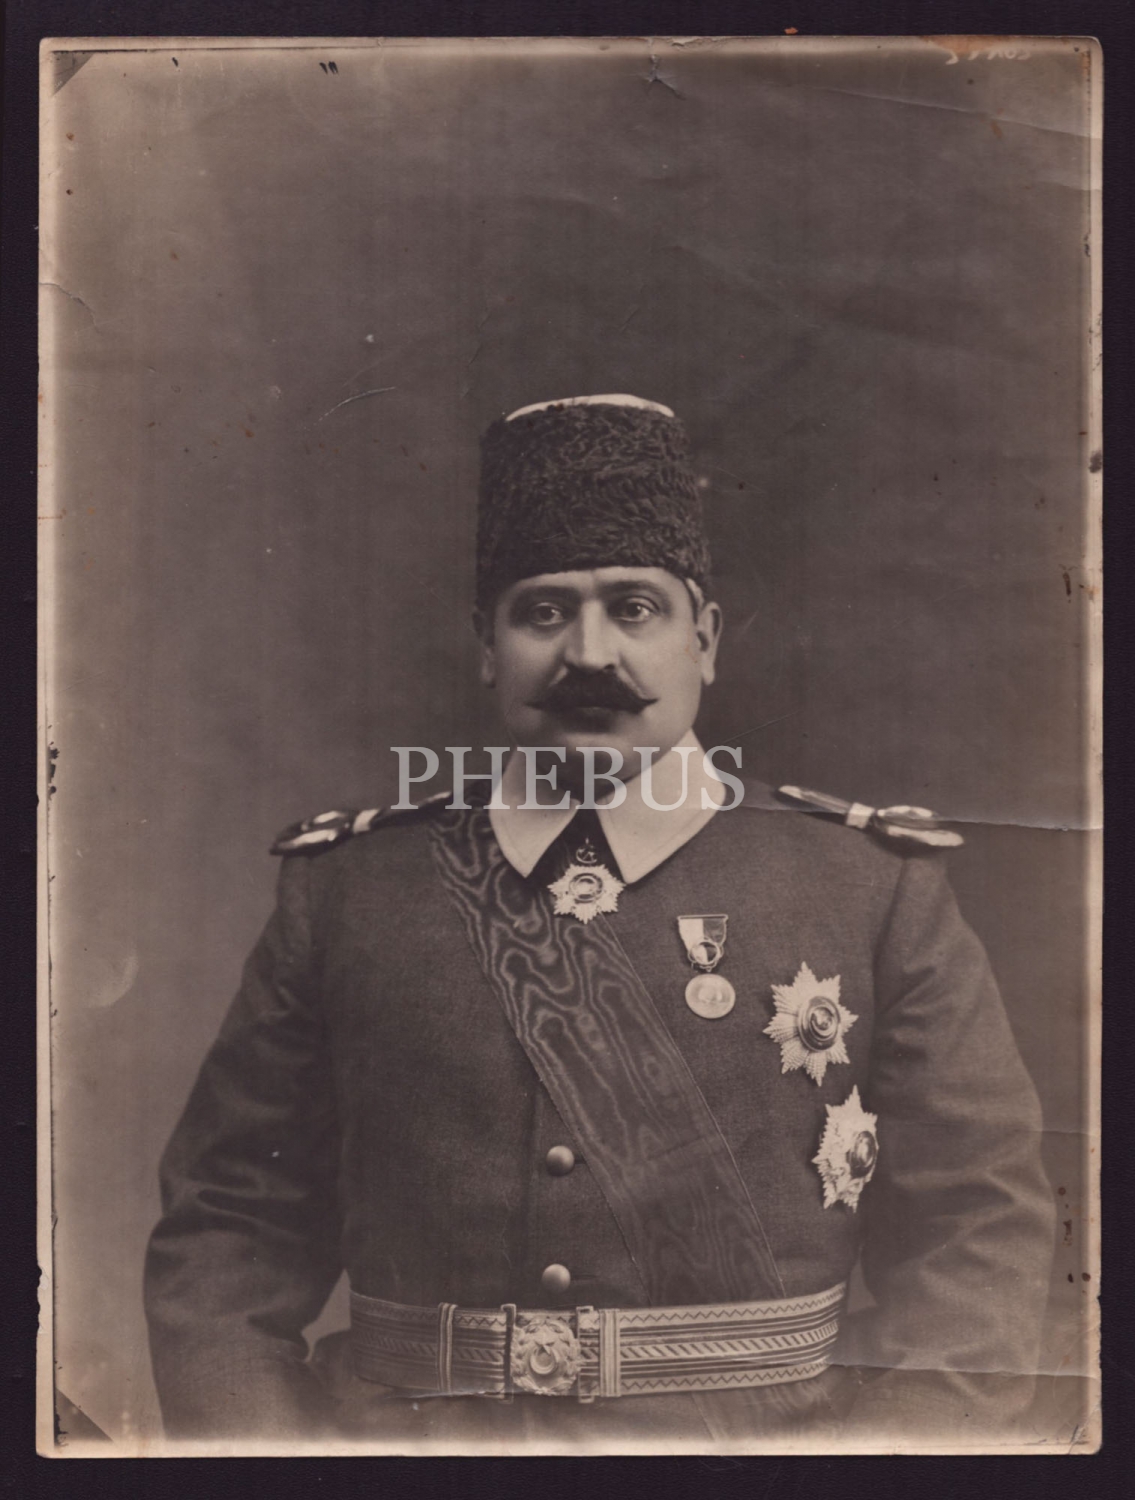 İttihat ve Terakki Cemiyeti´nin kurucularından Talat Paşa´nın, Maliye Nazırı olduğu dönemde madalya ve nişanlarıyla bezeli üniformasıyla aldırdığı çok nadir bir stüdyo hatıra fotoğrafı,18x24 cm...